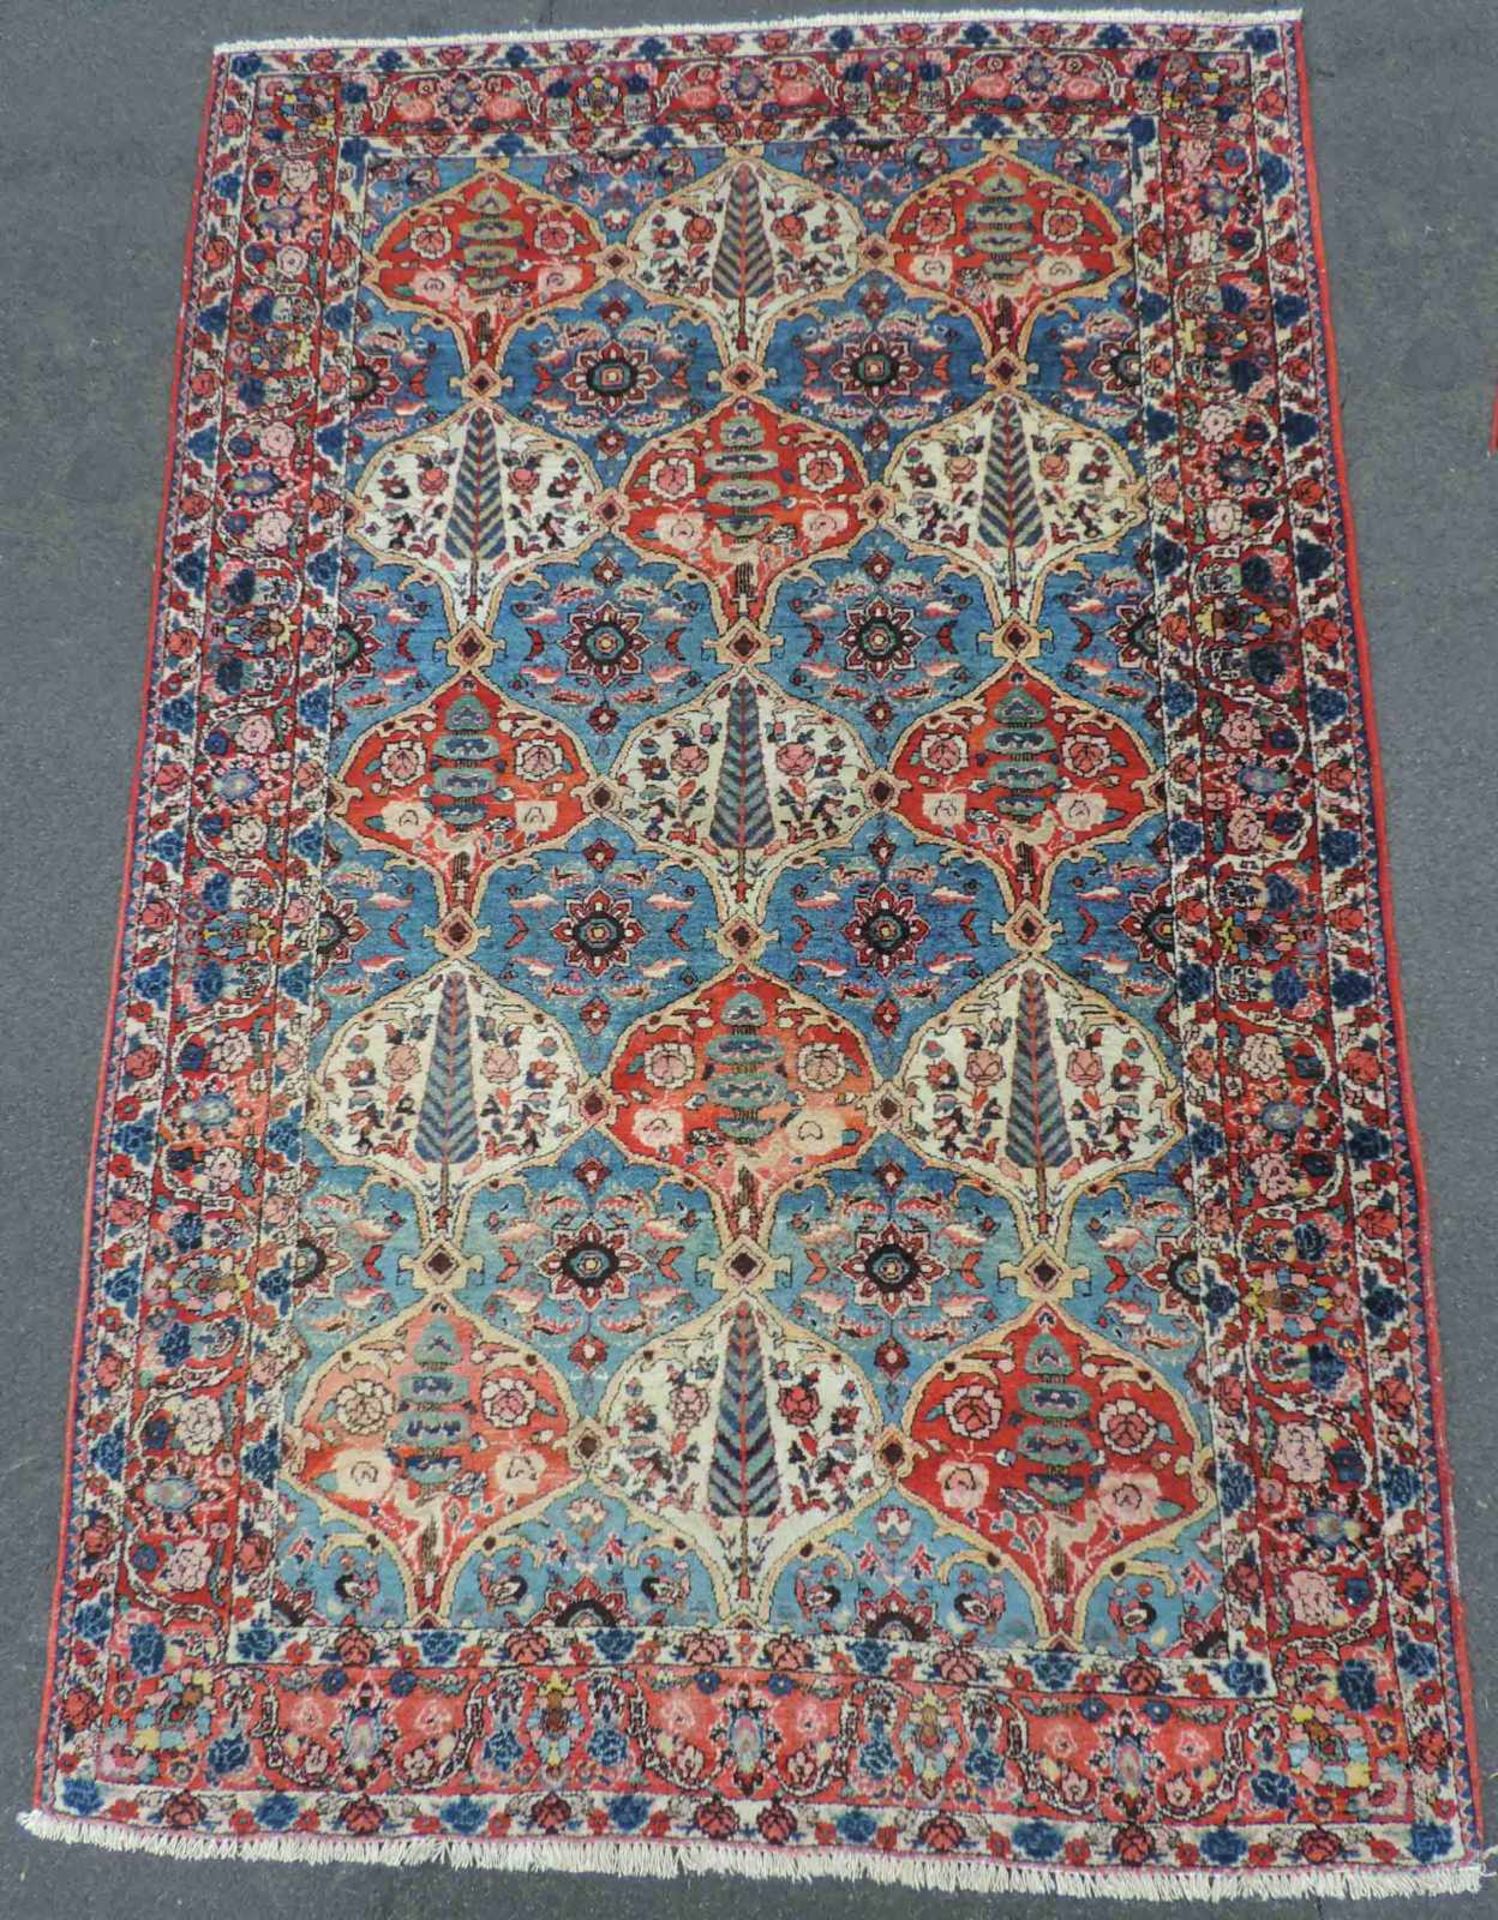 Bachtiar Felderteppich. Iran. Alt um 1940. 218 cm x 144 cm. Handgeknüpft. Wolle auf Baumwolle.